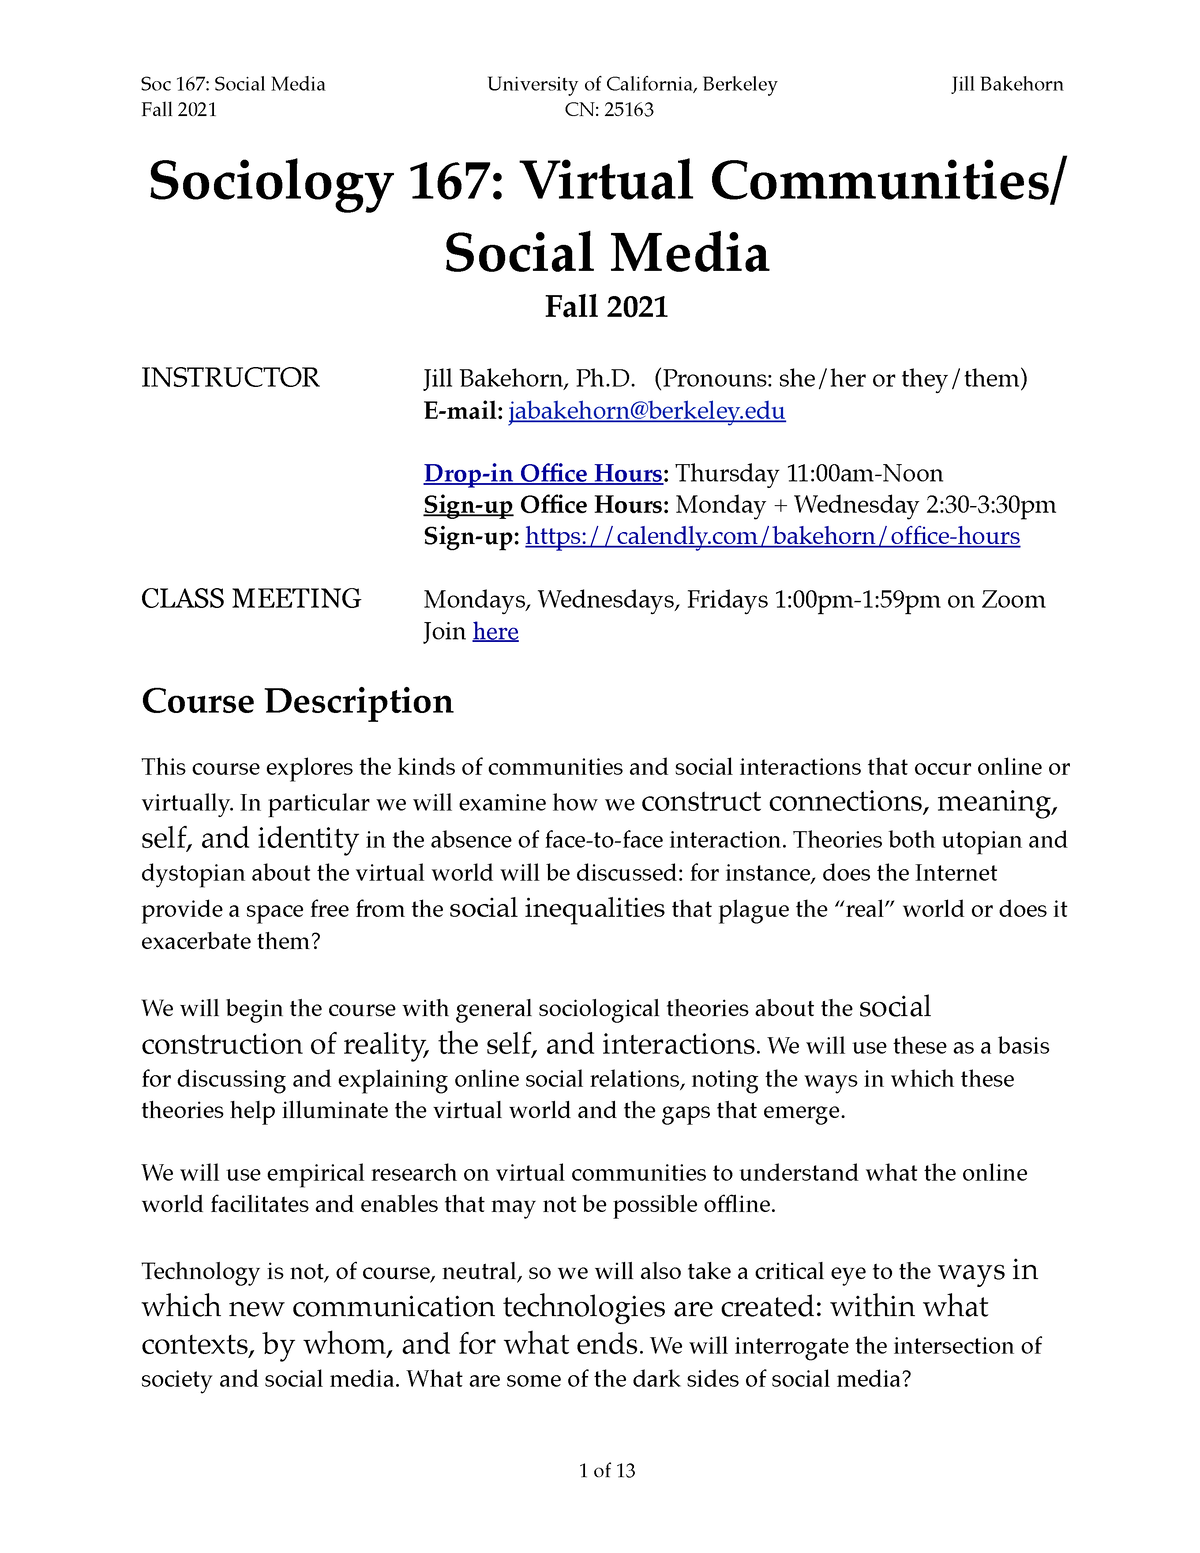 Soc 167 Fall 2021 Syllabus Fall 2021 Cn 25163 Sociology 167 Virtual Communities Social